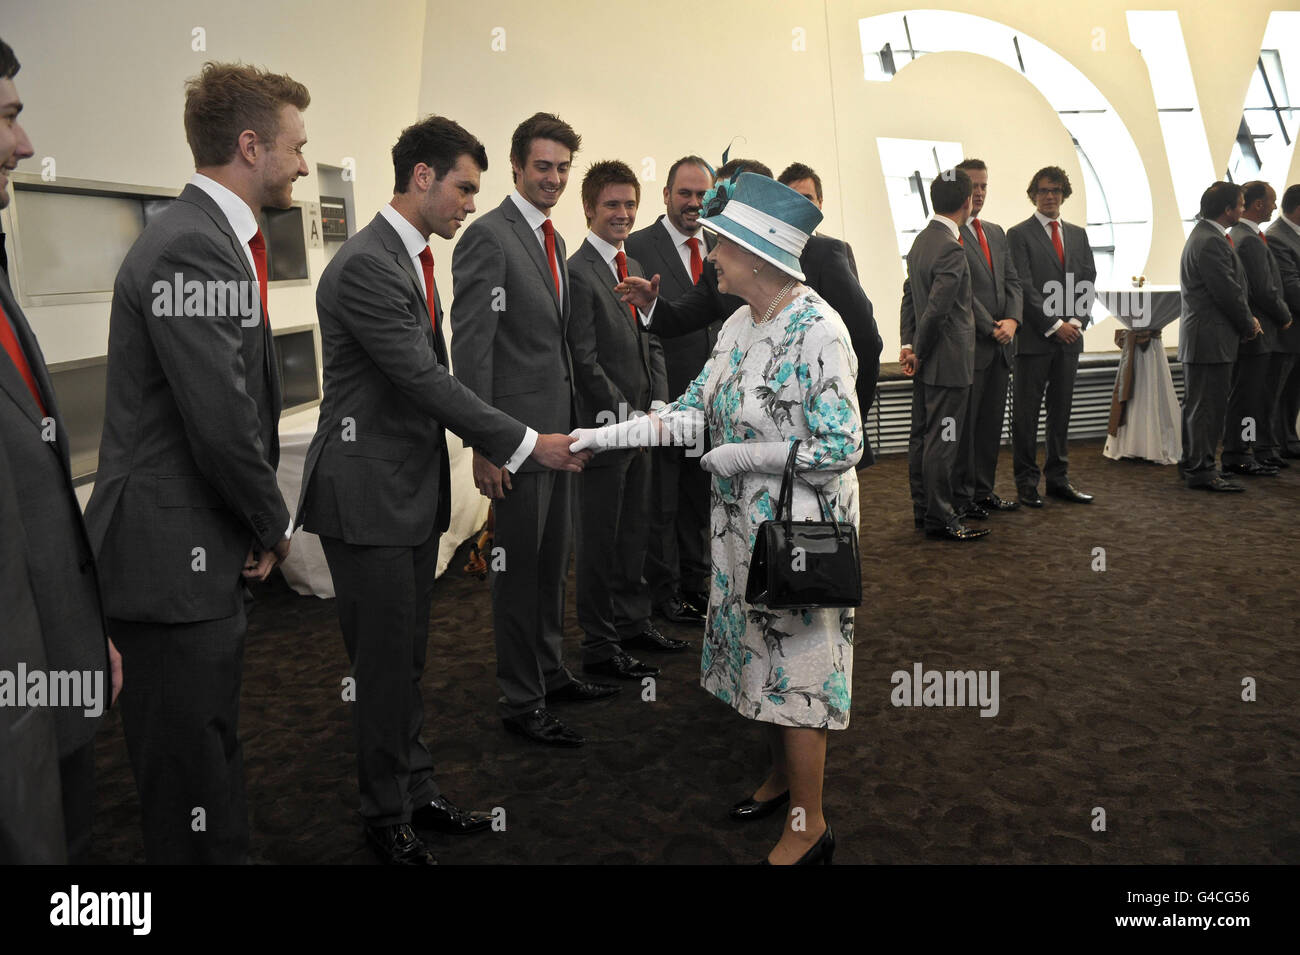 La Reina Elizabeth II se reúne con miembros del grupo vocal 'Solamente Hombres en voz alta' en el Centro del Milenio de Gales donde hubo una recepción para los miembros de la Asamblea. Foto de stock